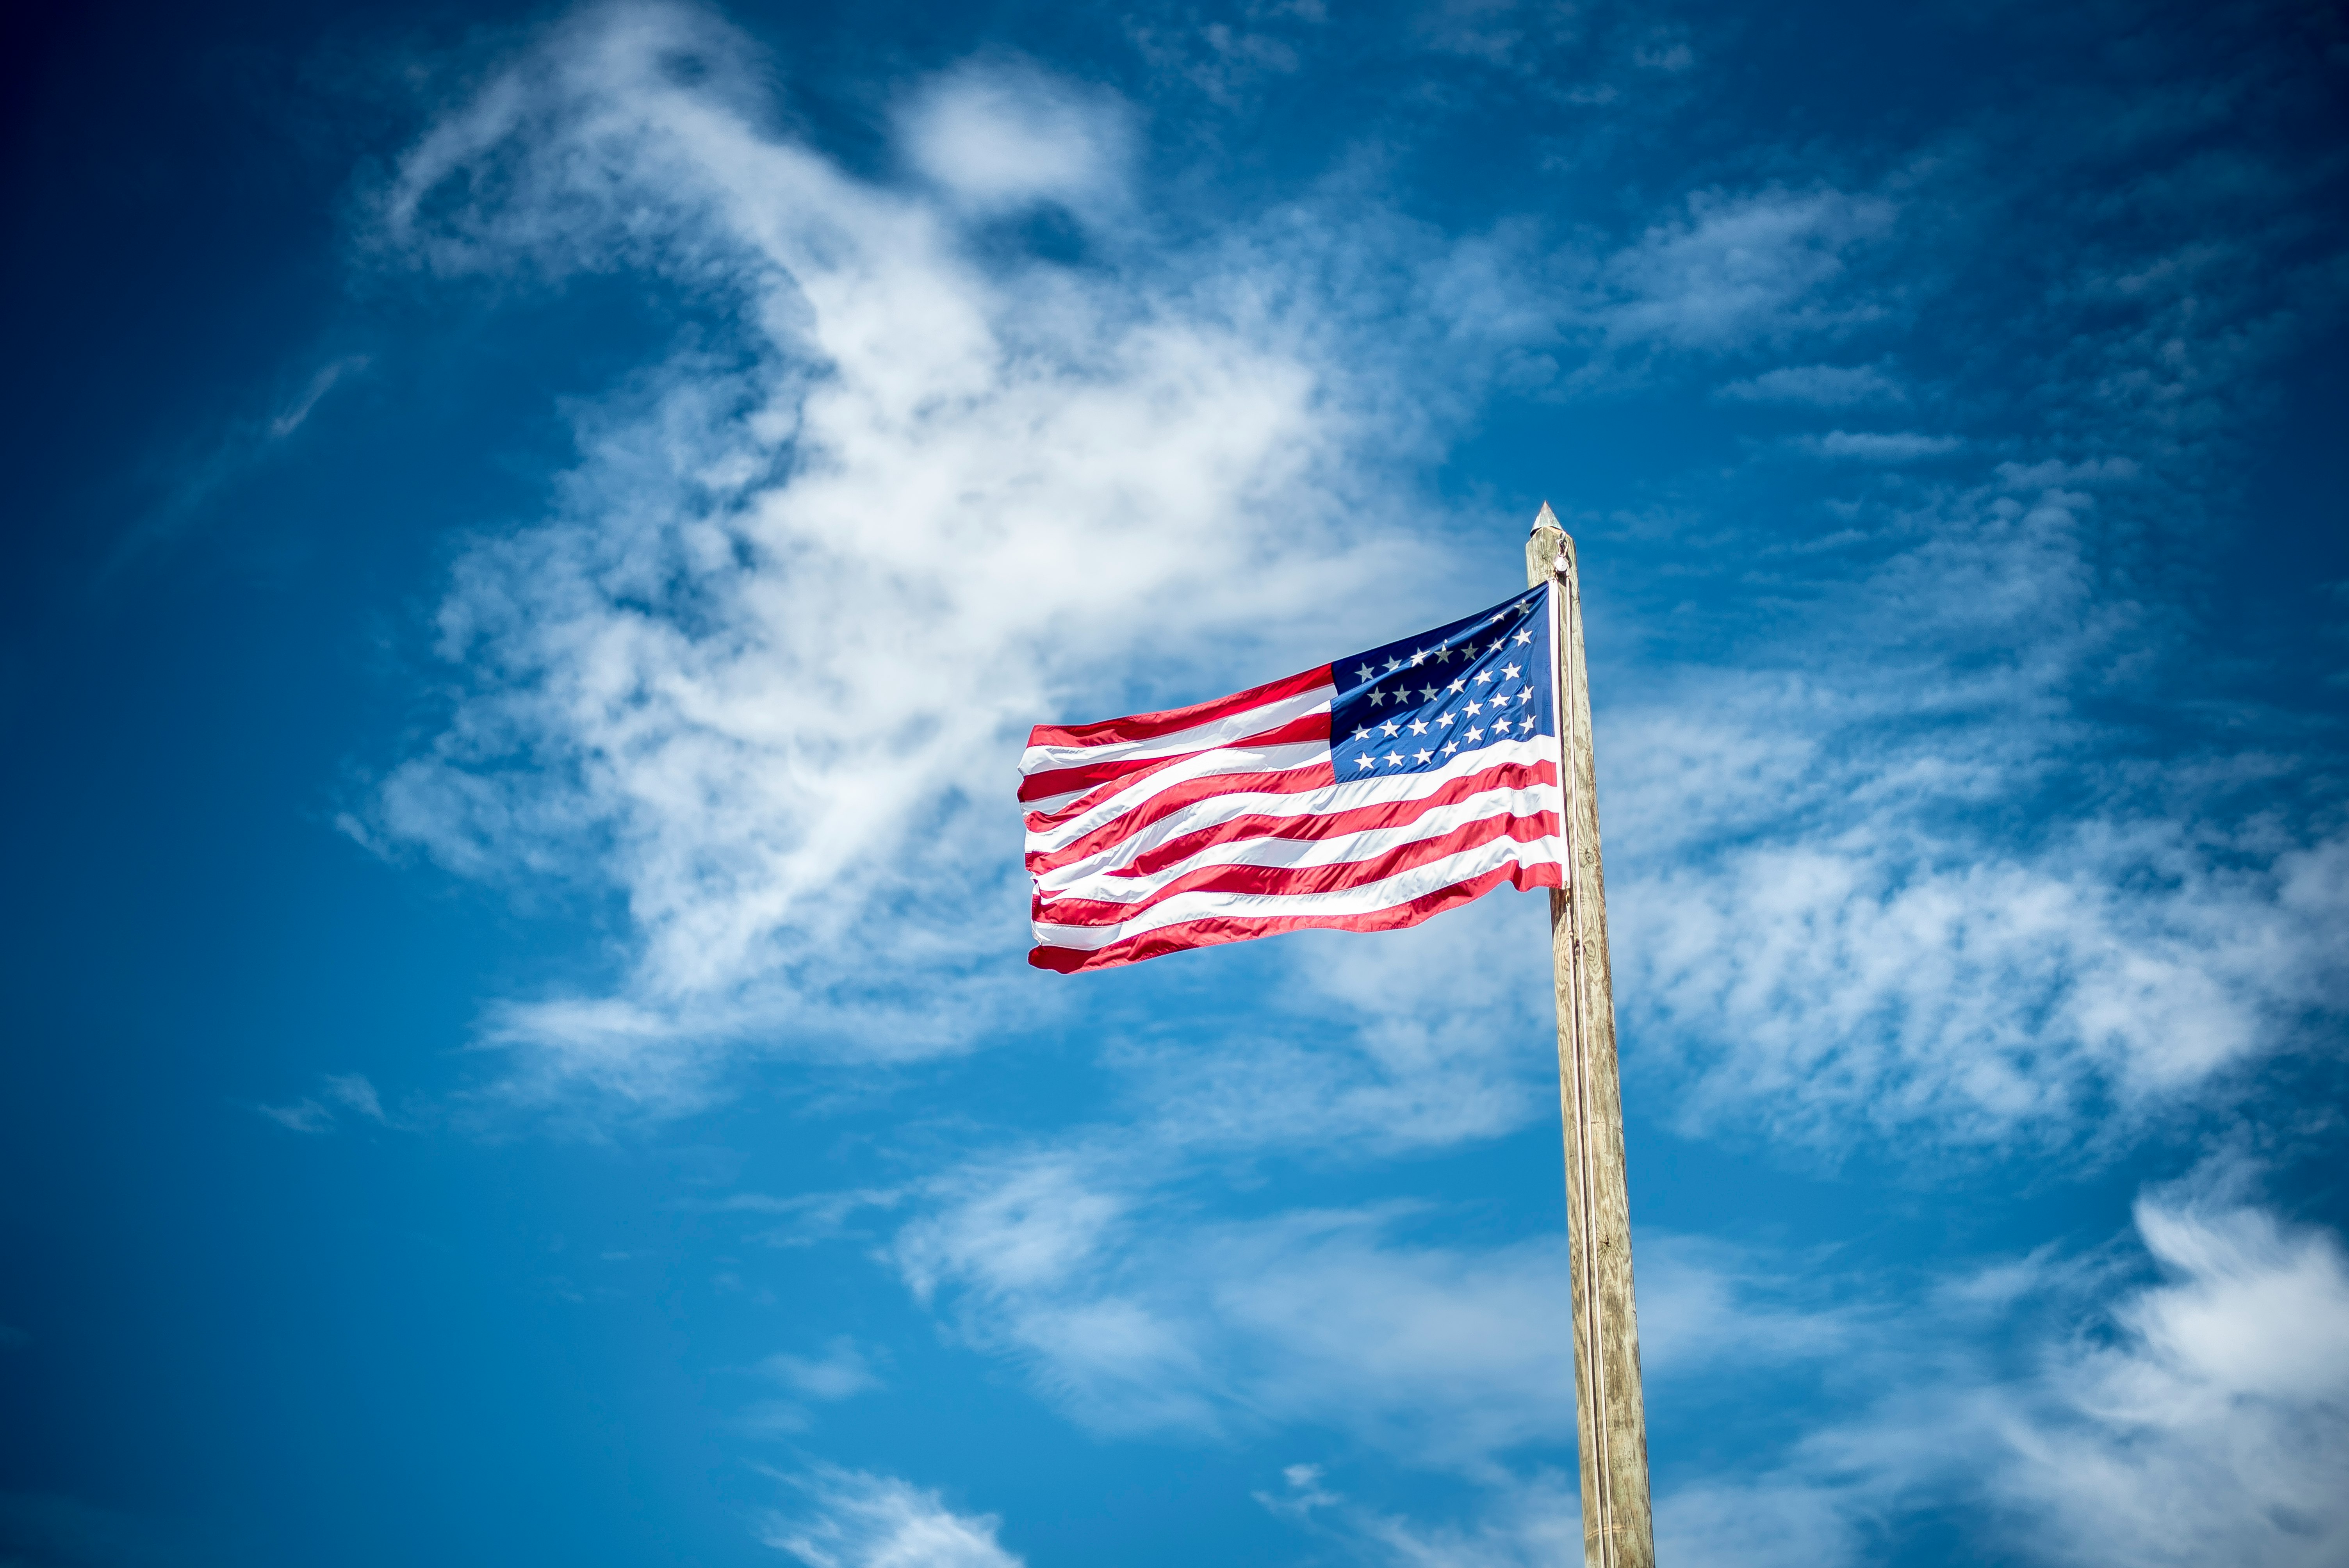 U.S America flag